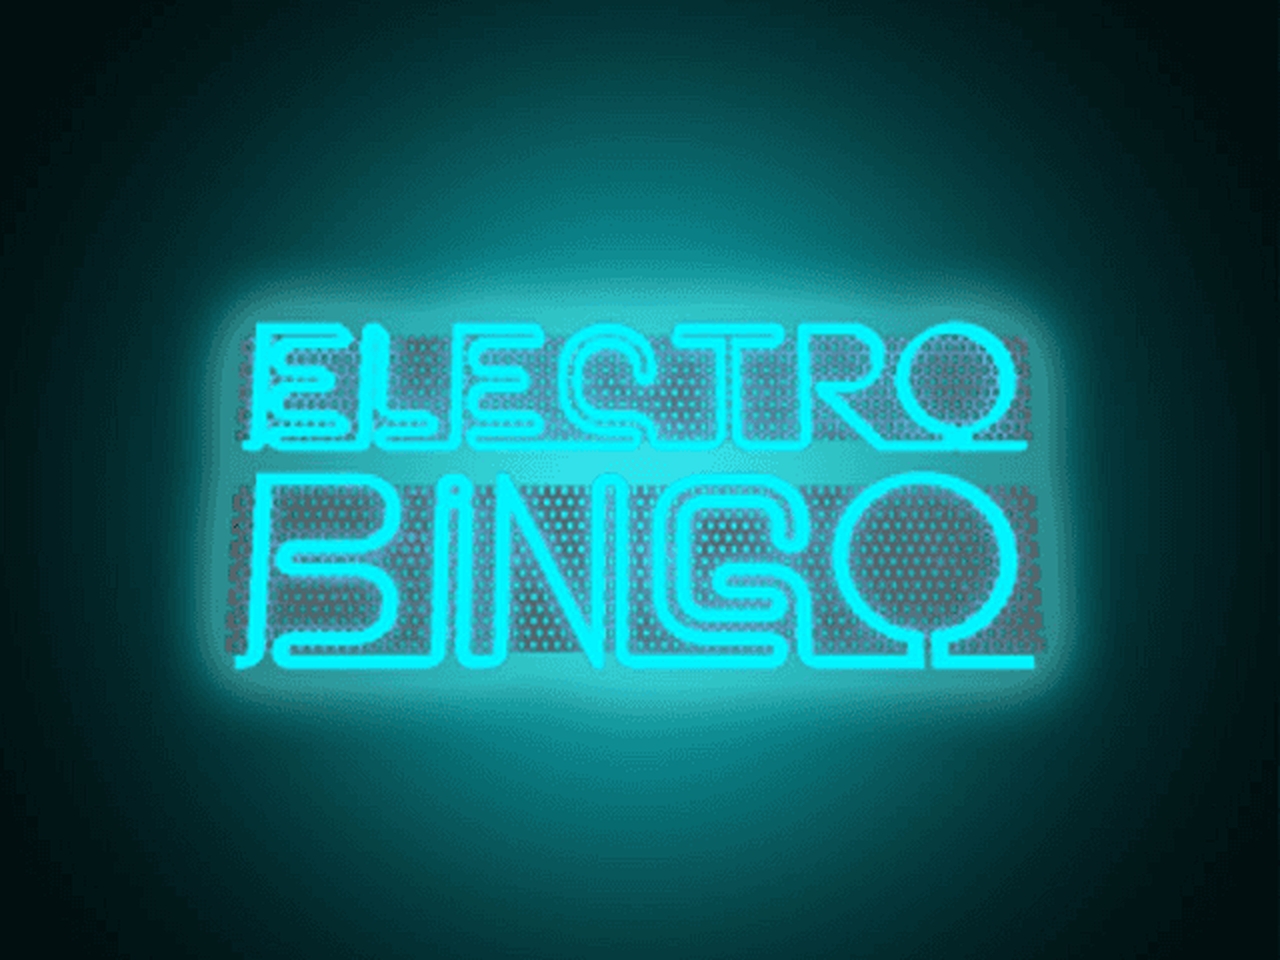 Electro Bingo